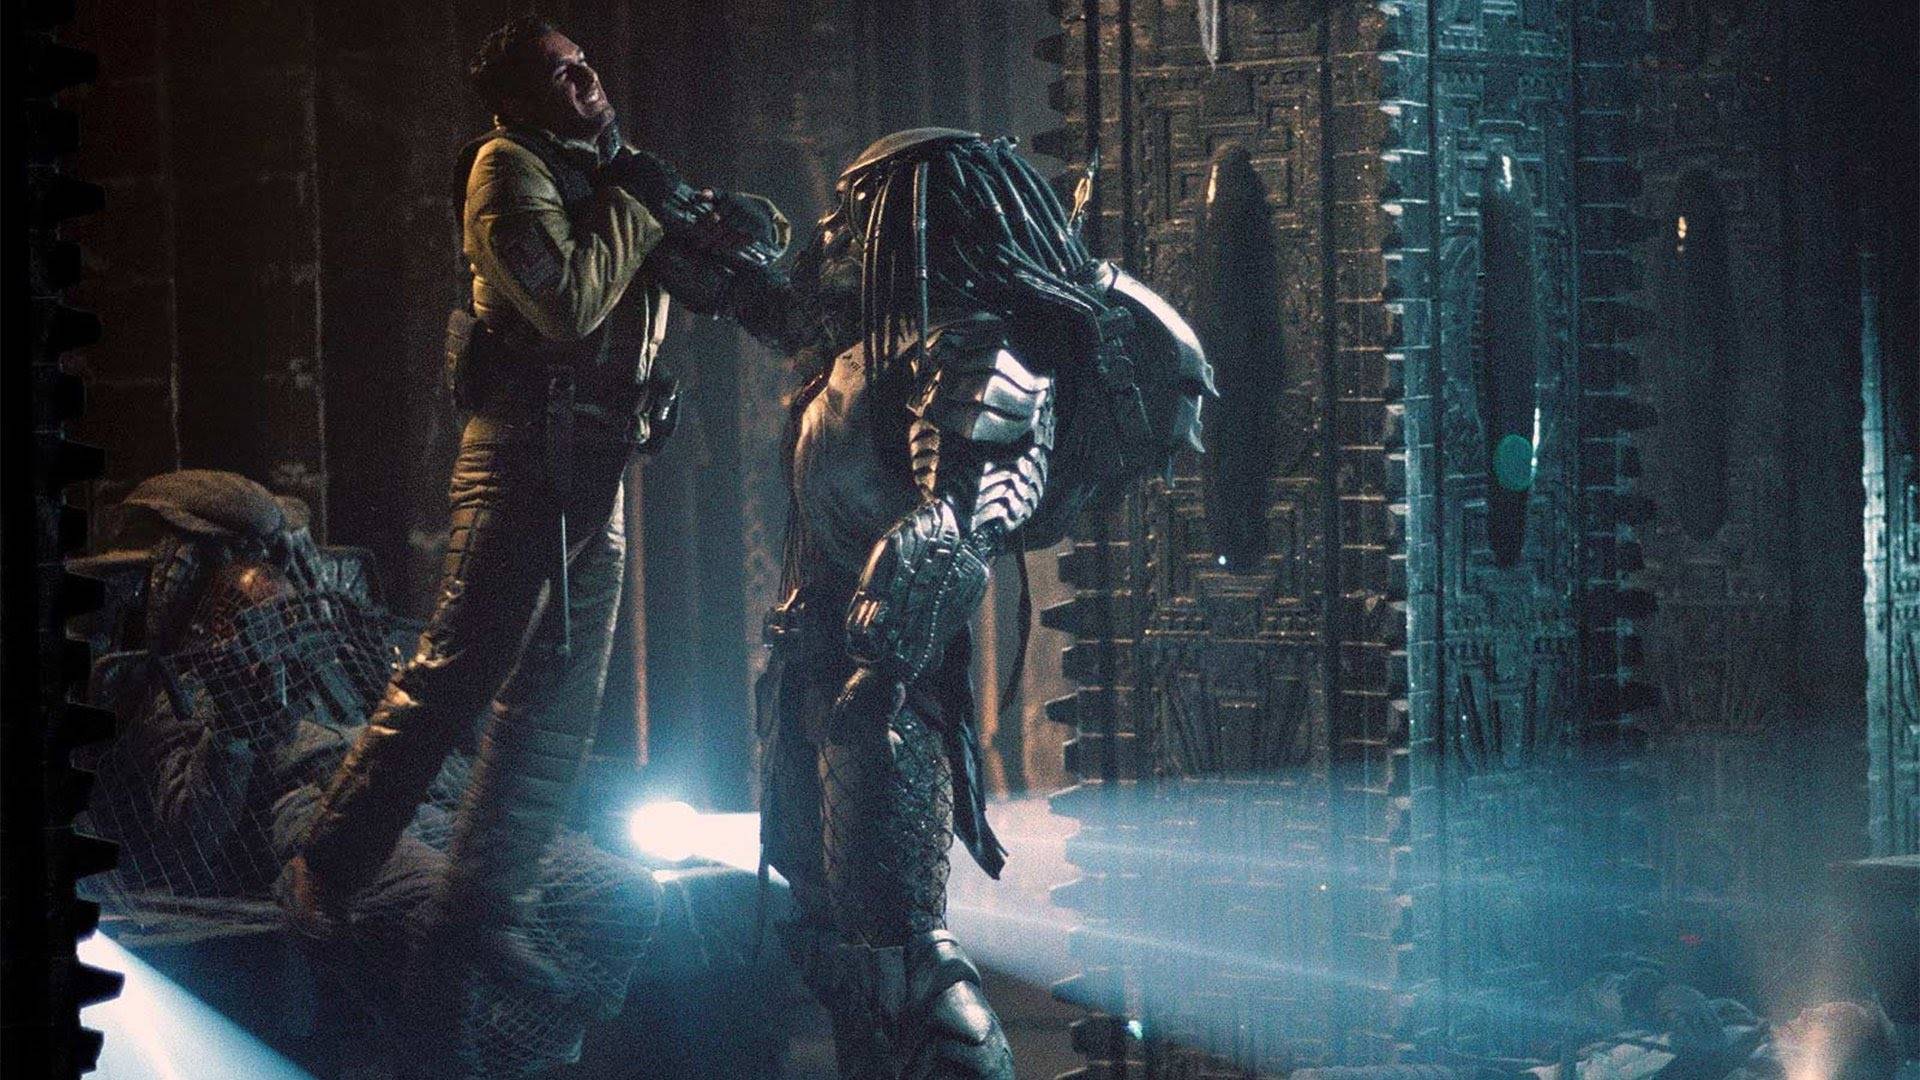 Xem Phim Cuộc Chiến Dưới Tháp Cổ, AVP: Alien vs. Predator 2004